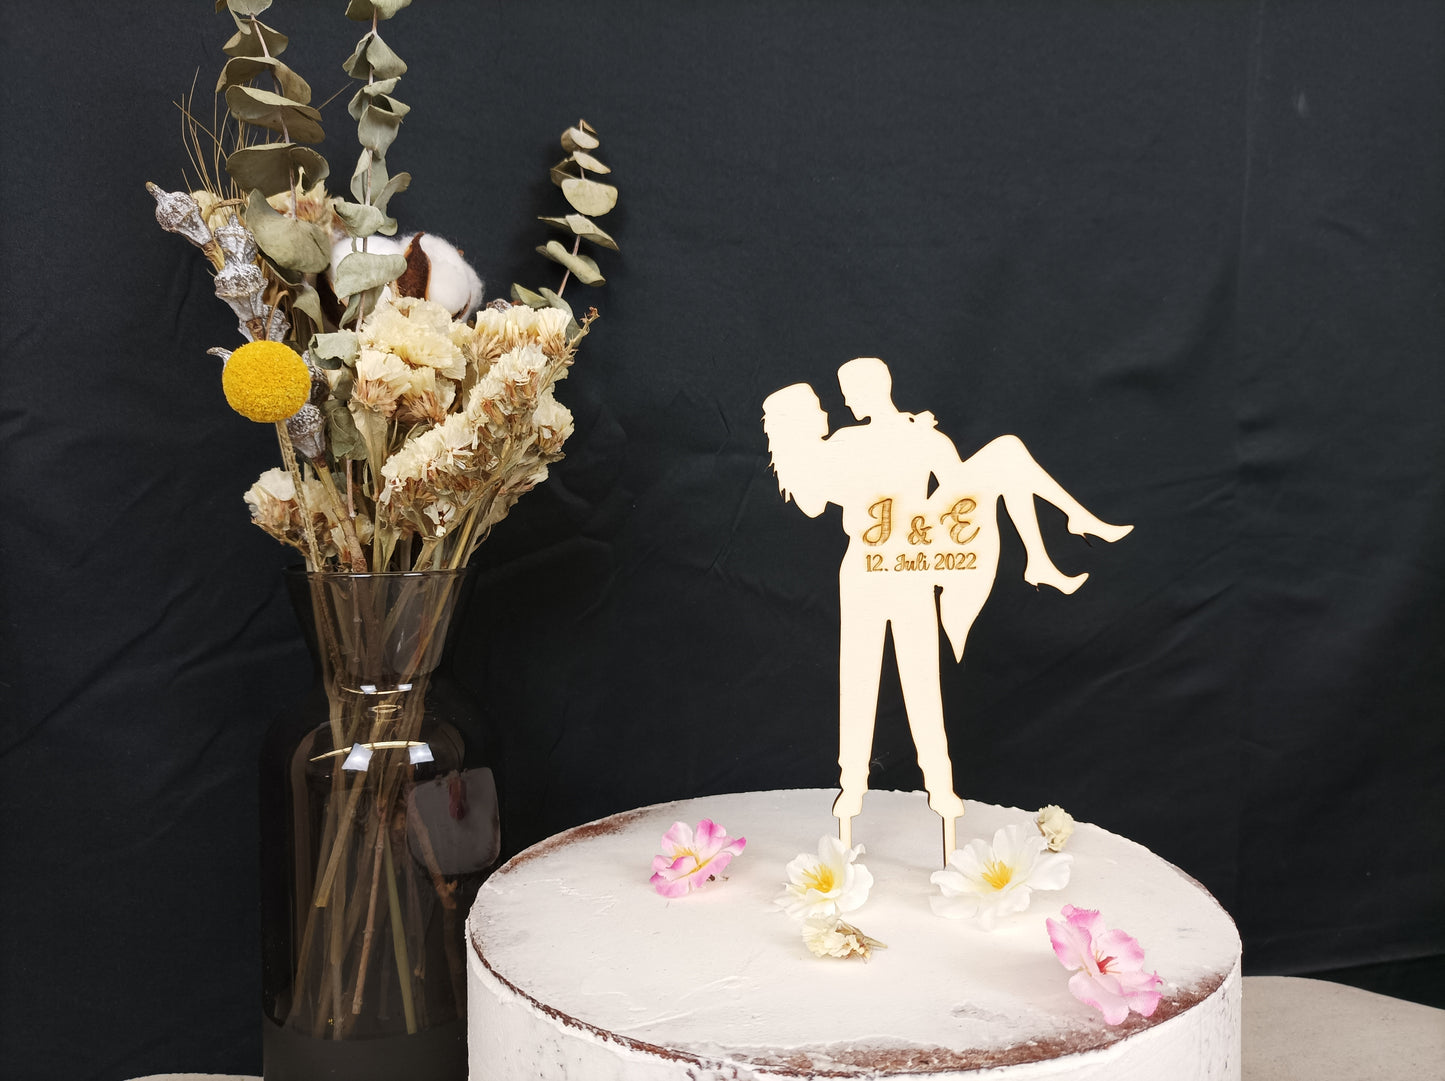 Caketopper / Tortenstecker für Hochzeit, Verlobung, Trauung aus Holz oder Acrylglas mit Silhouette von Hochzeitspaar